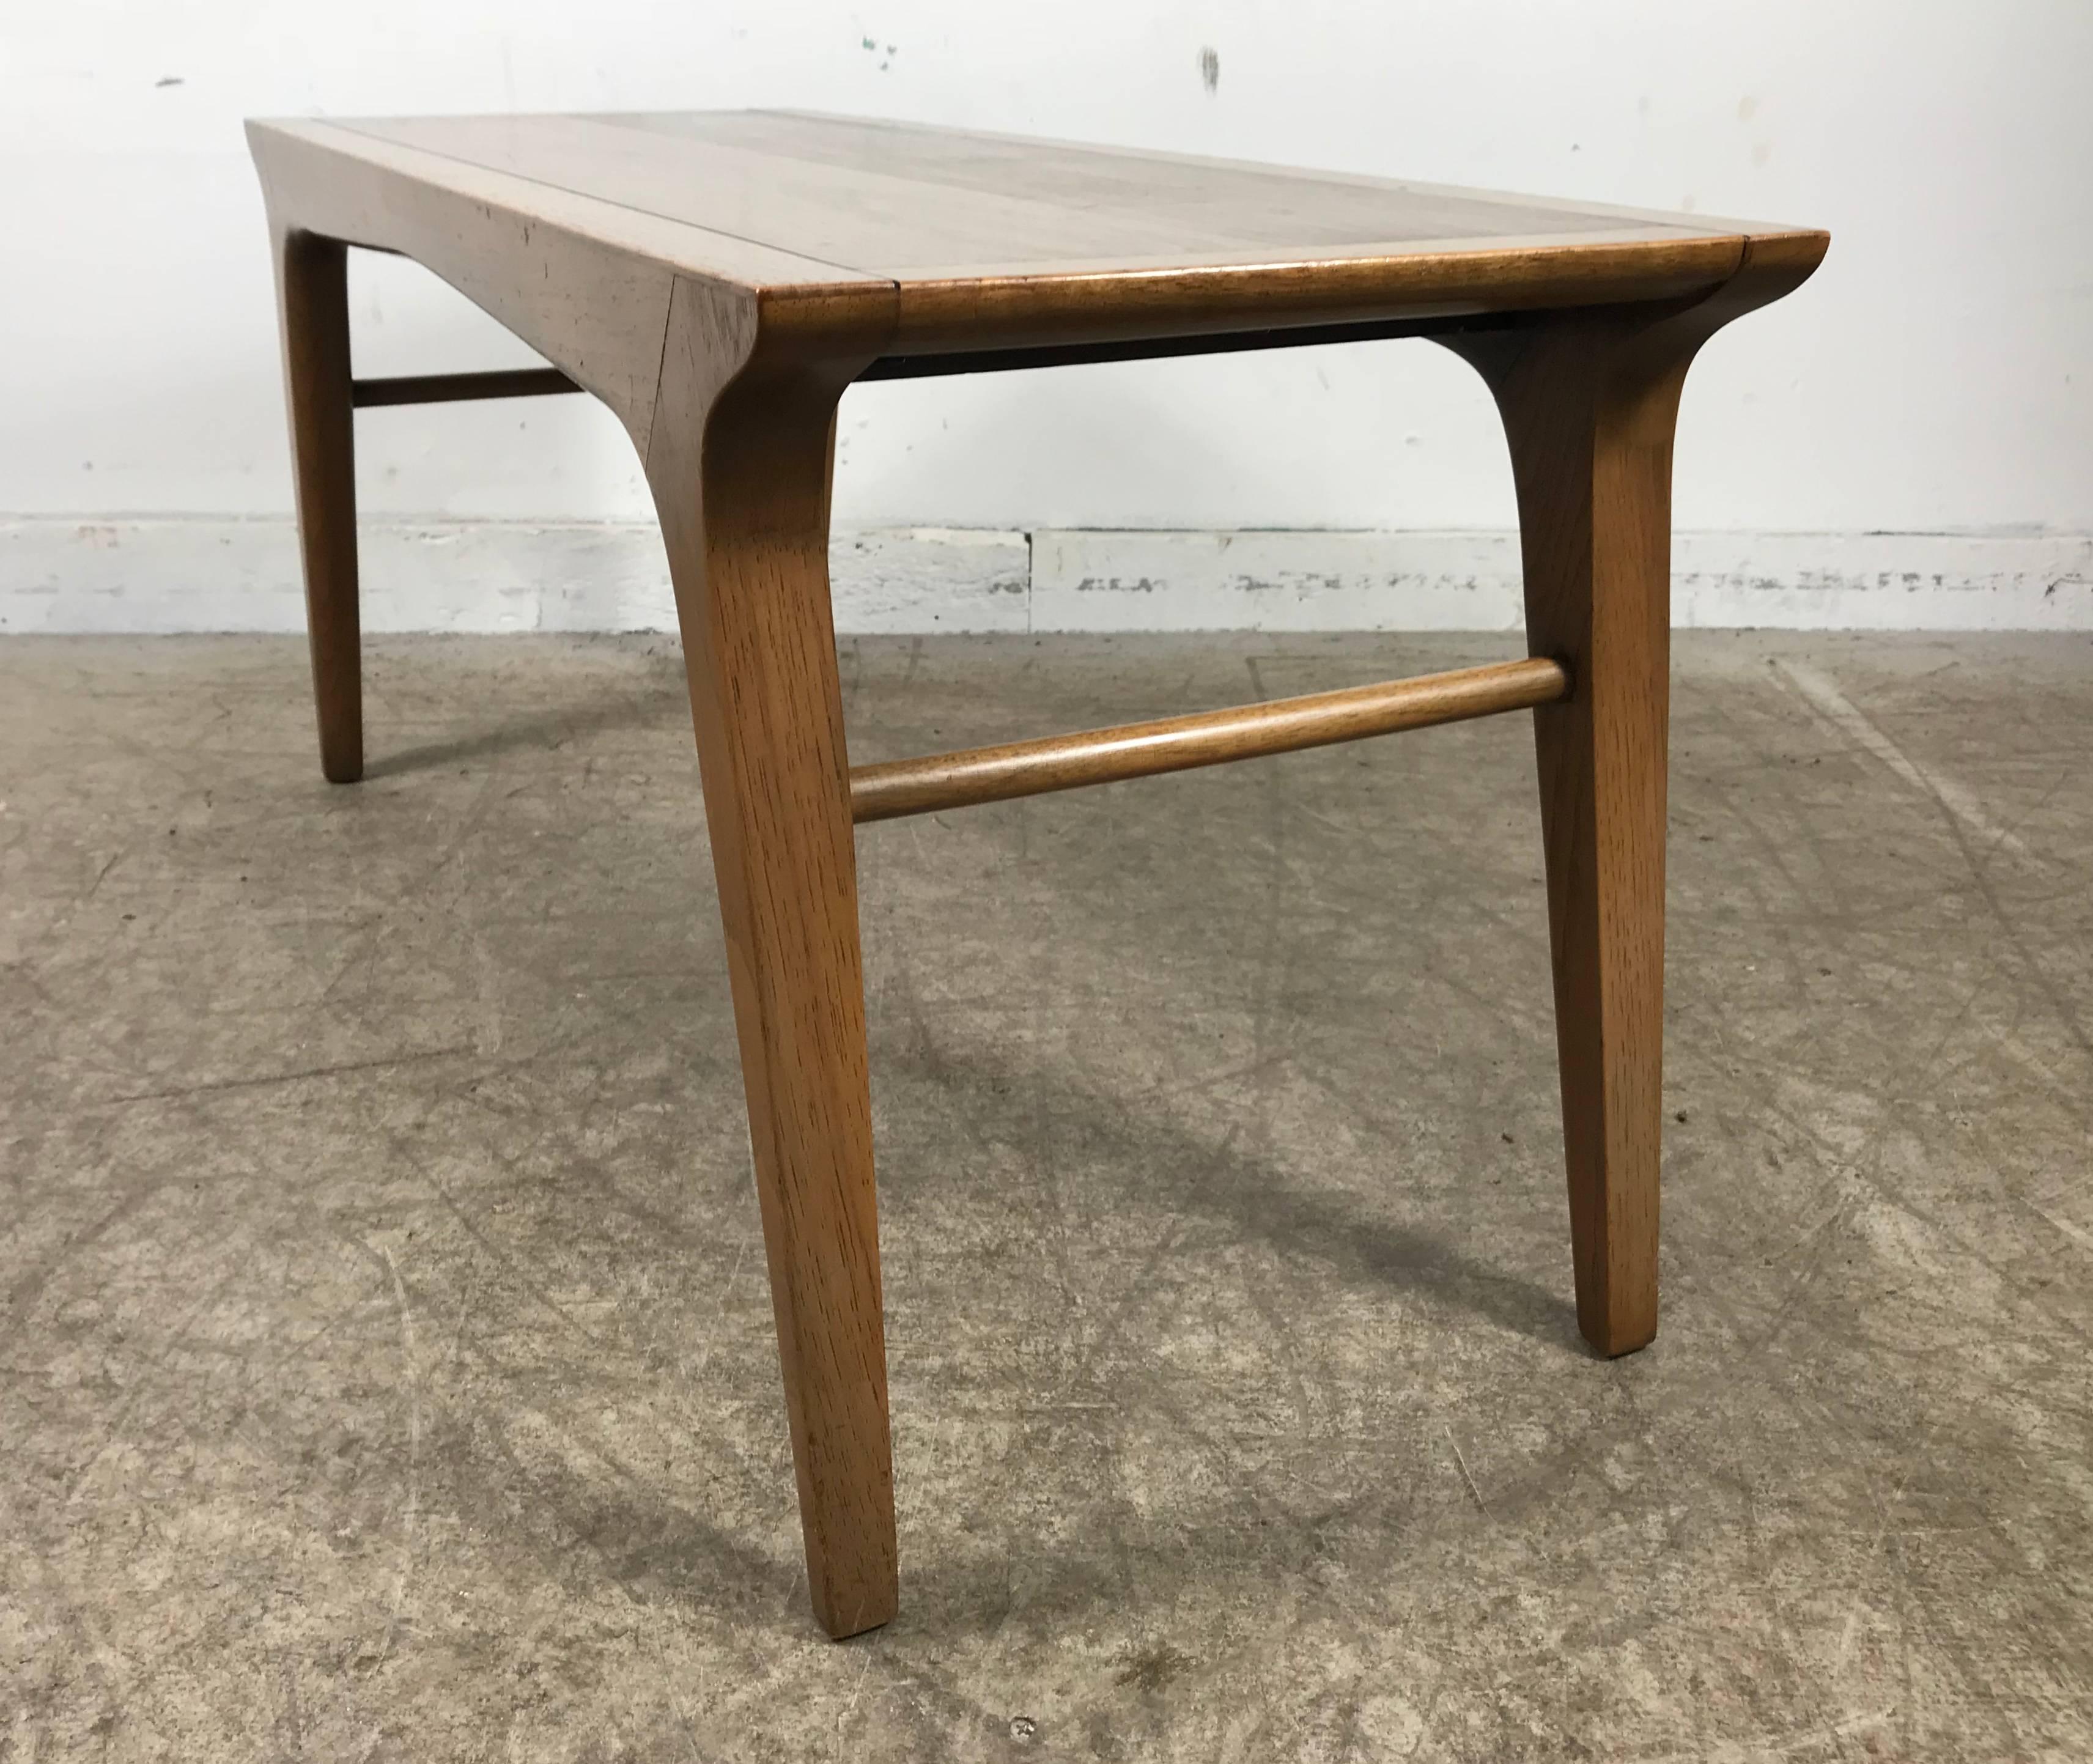 Fruitwood Elusive Modernist Bench or Table by John Van Koert for Drexel